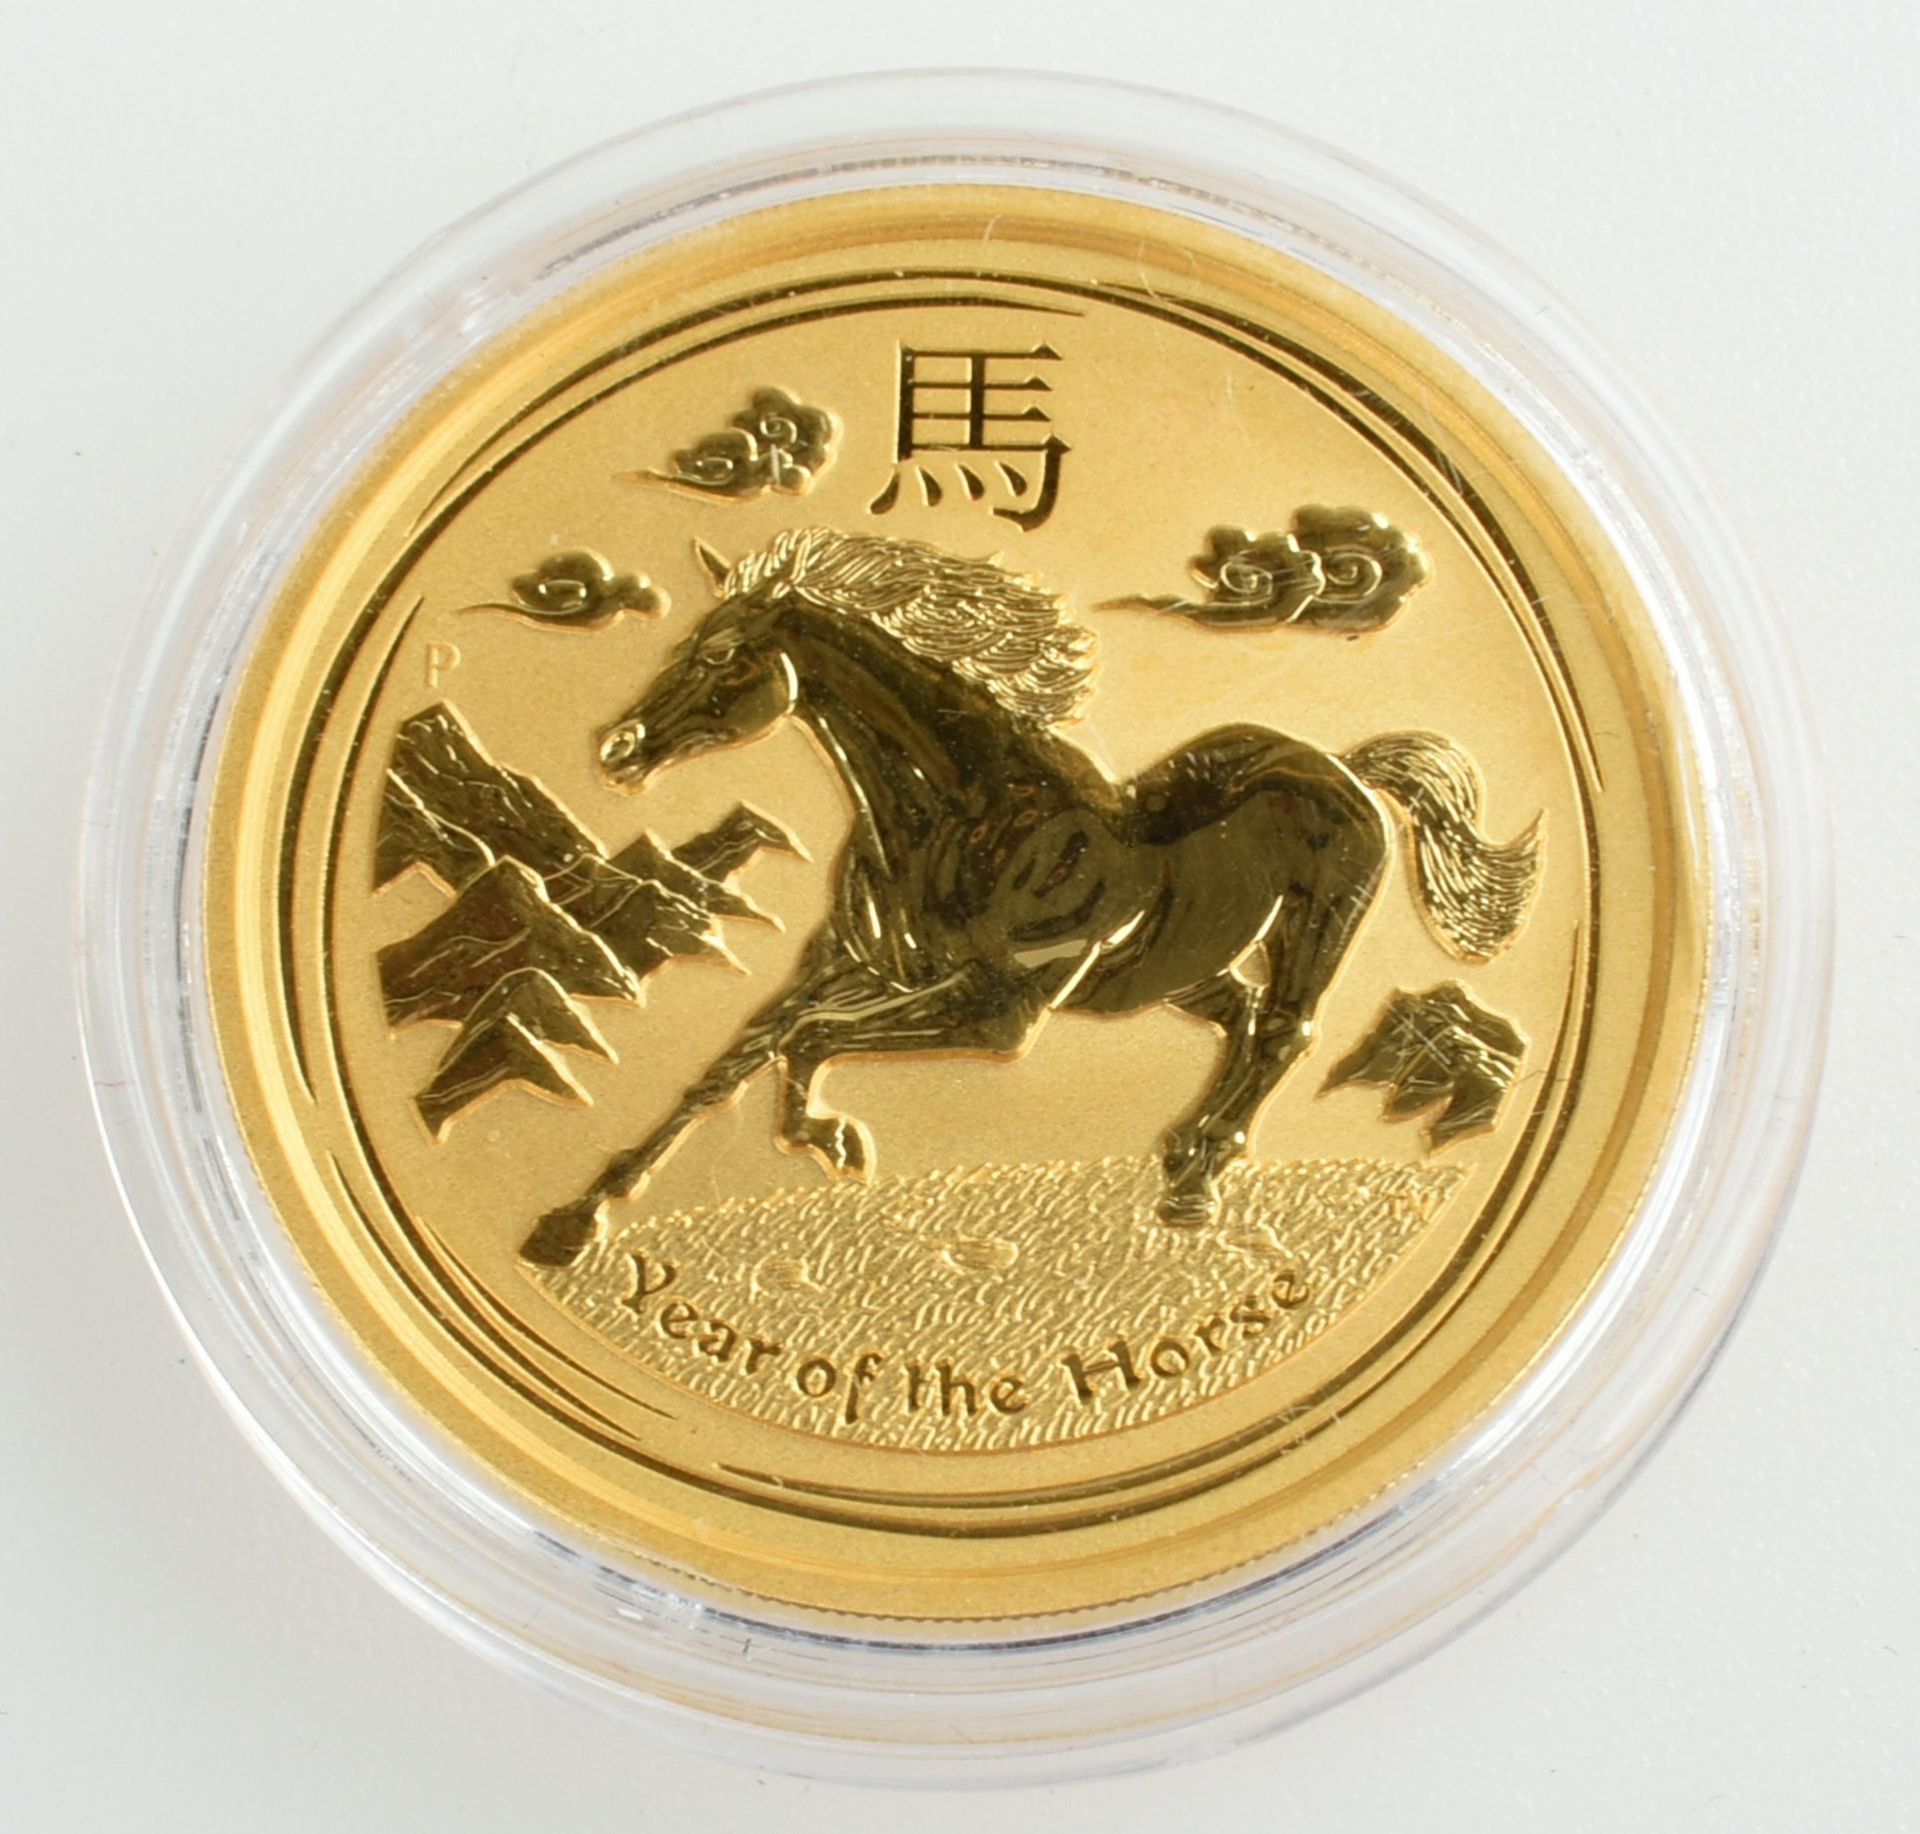 200 Gold-Dollars Australien 2014 200 Dollar in Gold, 999/1000, 2 oz Feingold (62,21 g), av. - Bild 3 aus 3